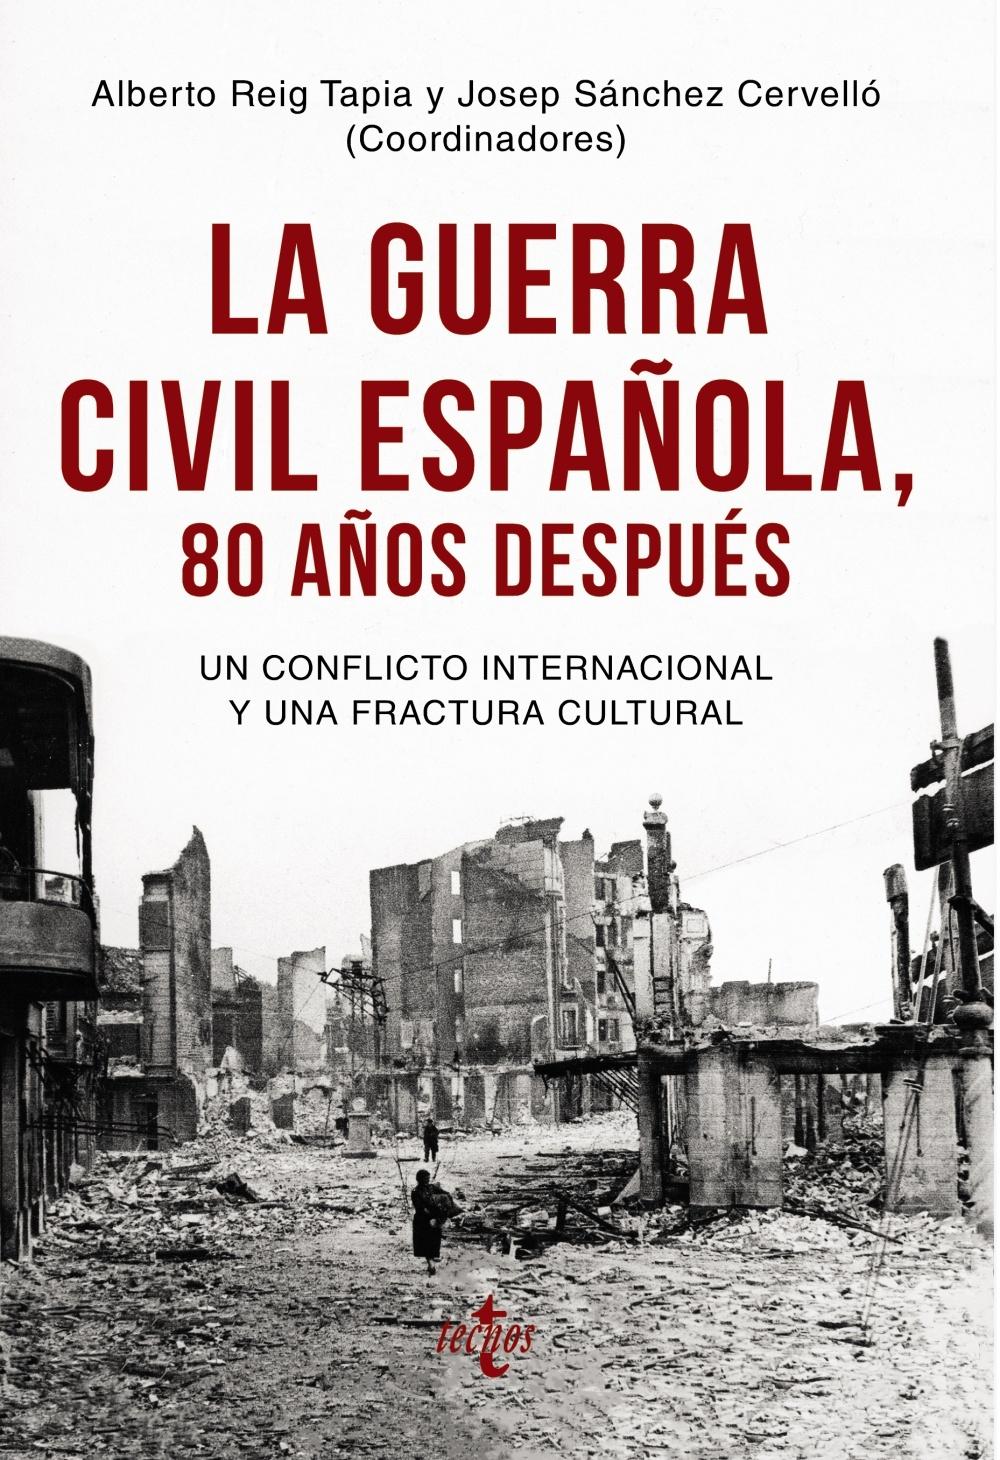 La Guerra Civil Española 80 Años Después "Un Conflicto Internacional y una Fractura Cultural". 